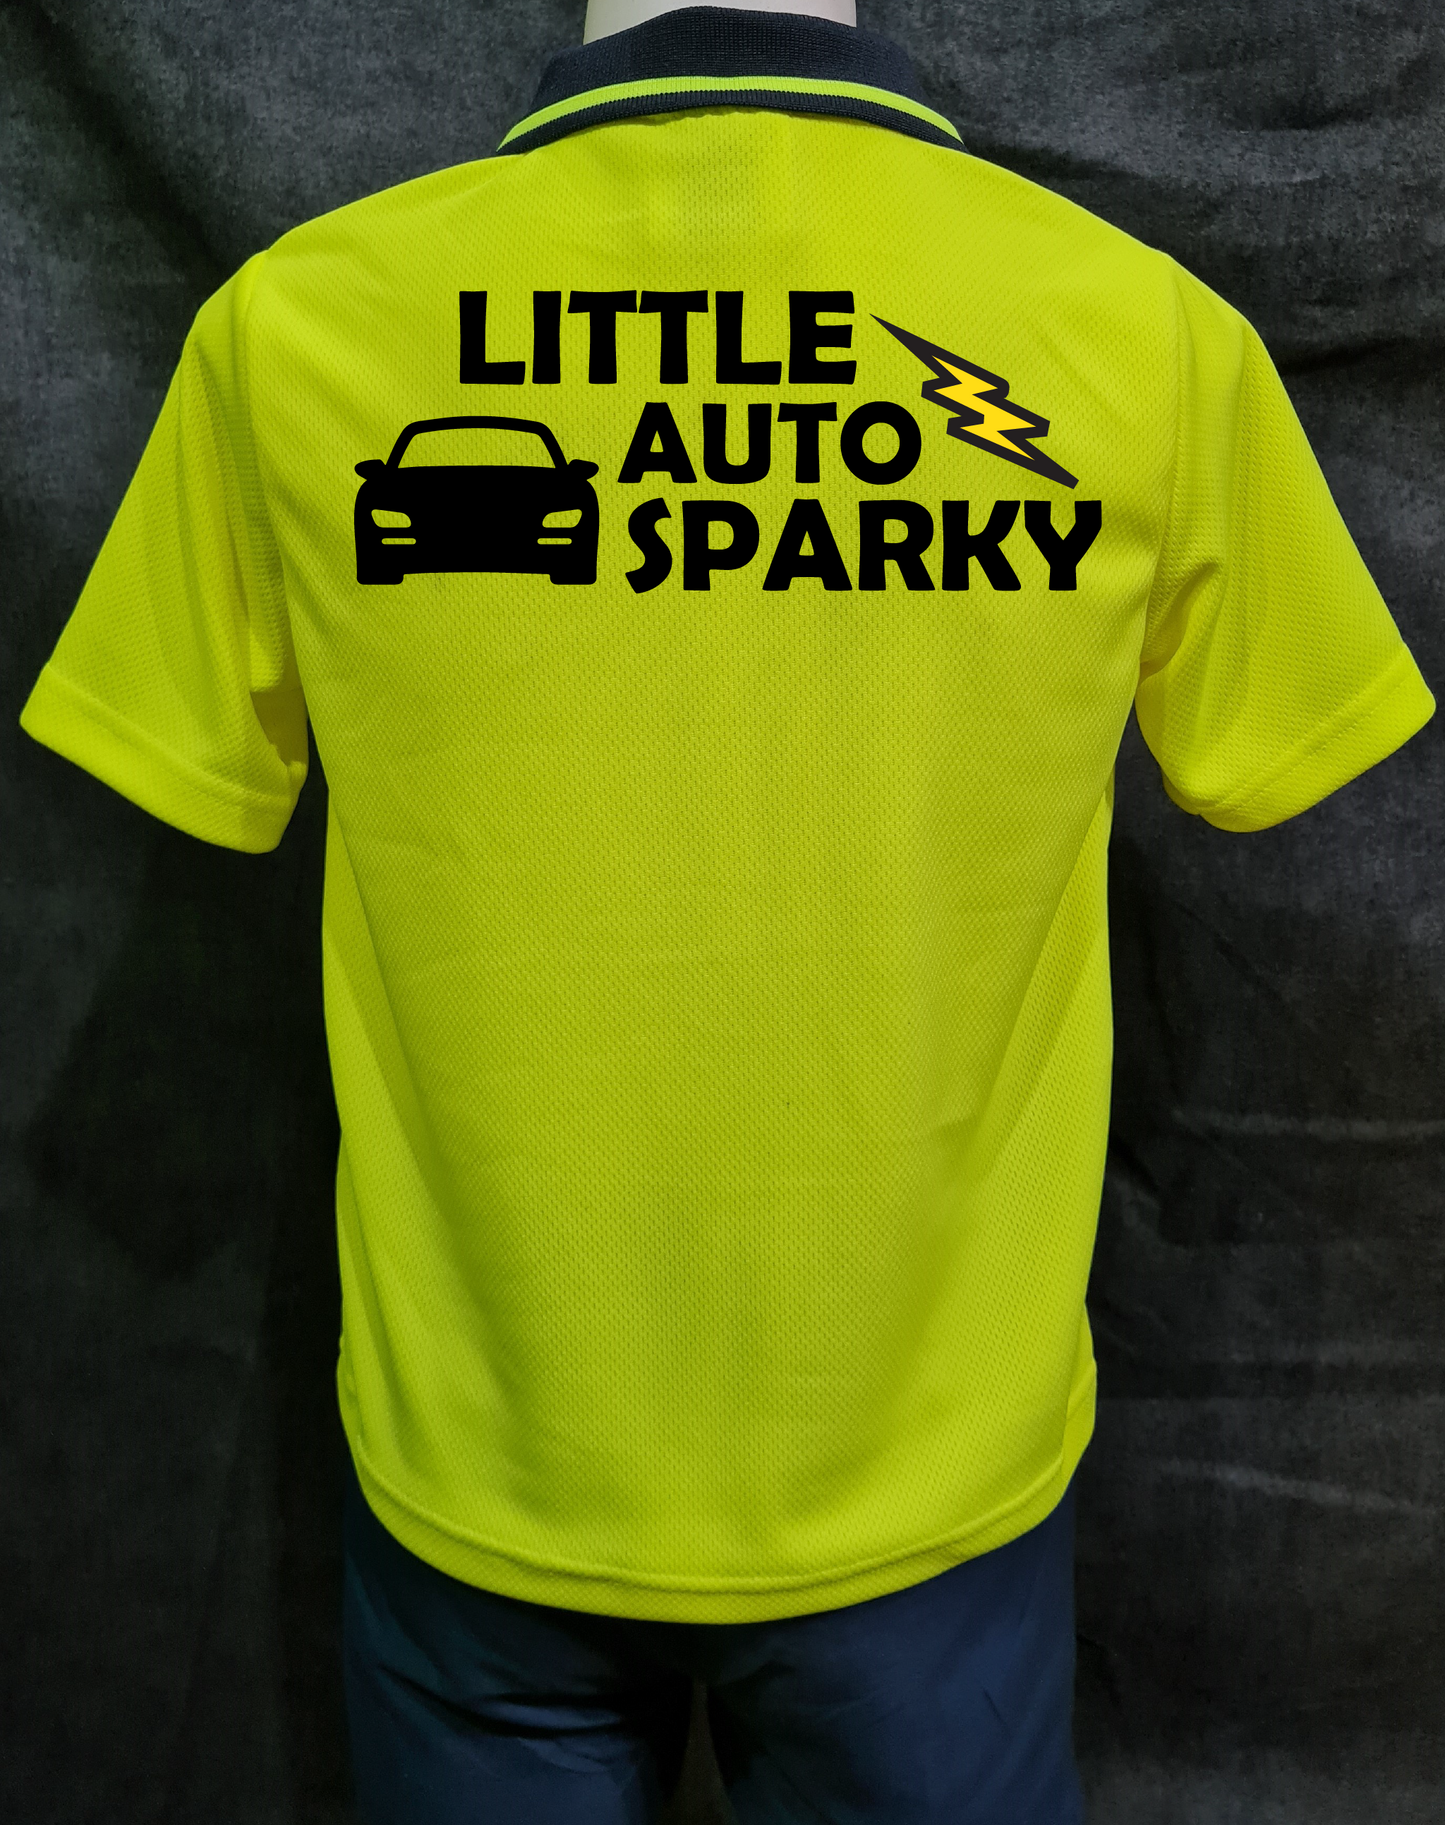 Little Auto Sparky